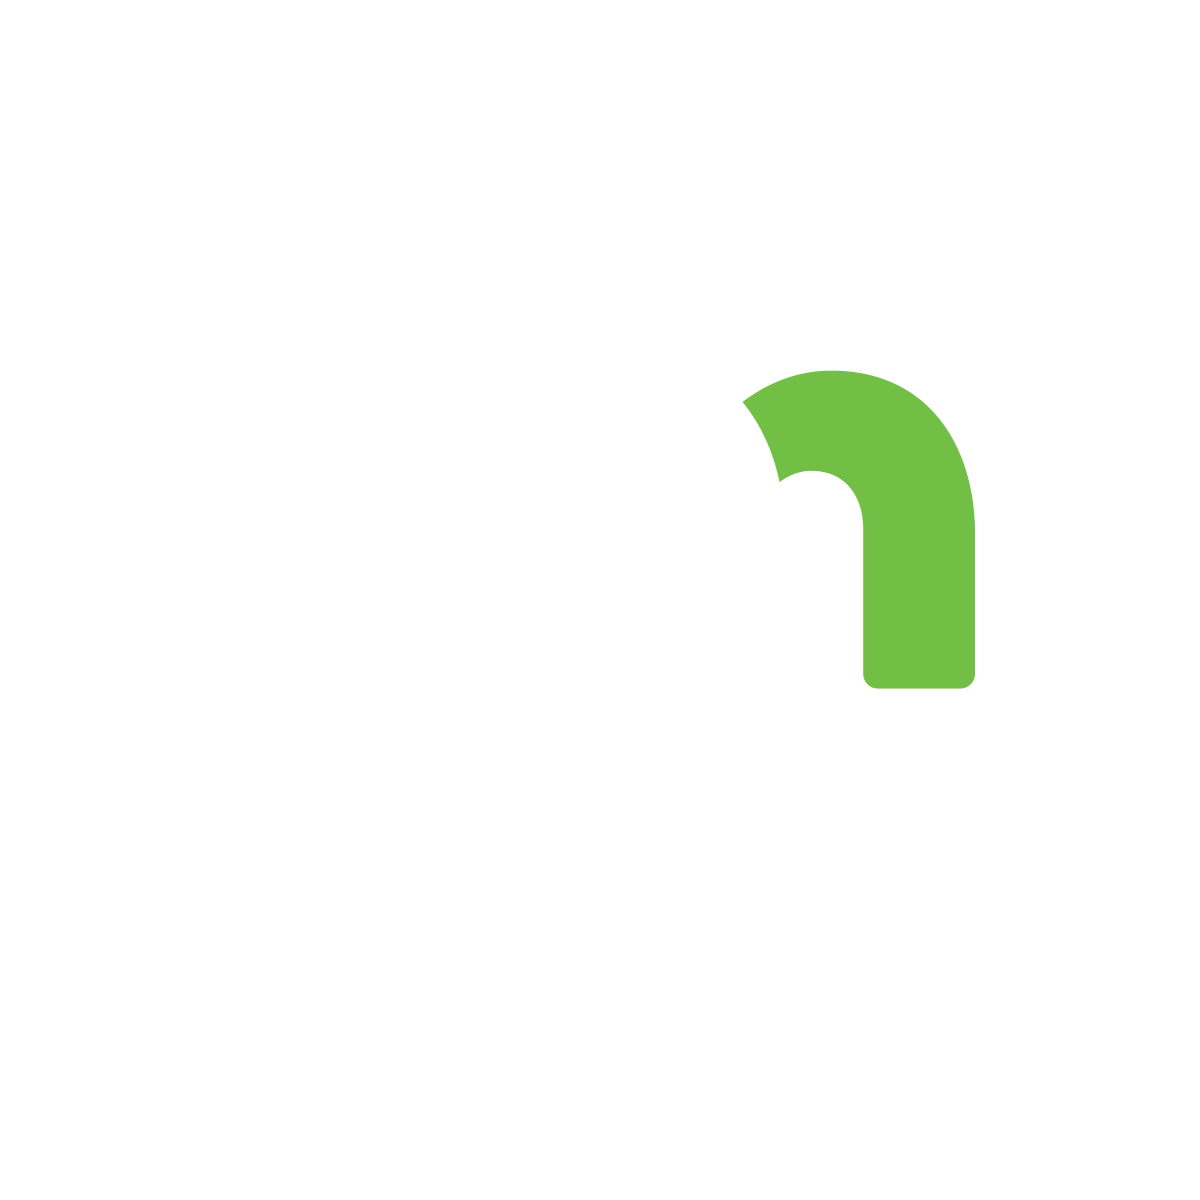 MN Logo - MnDOT Logo - MnDOT Media Room